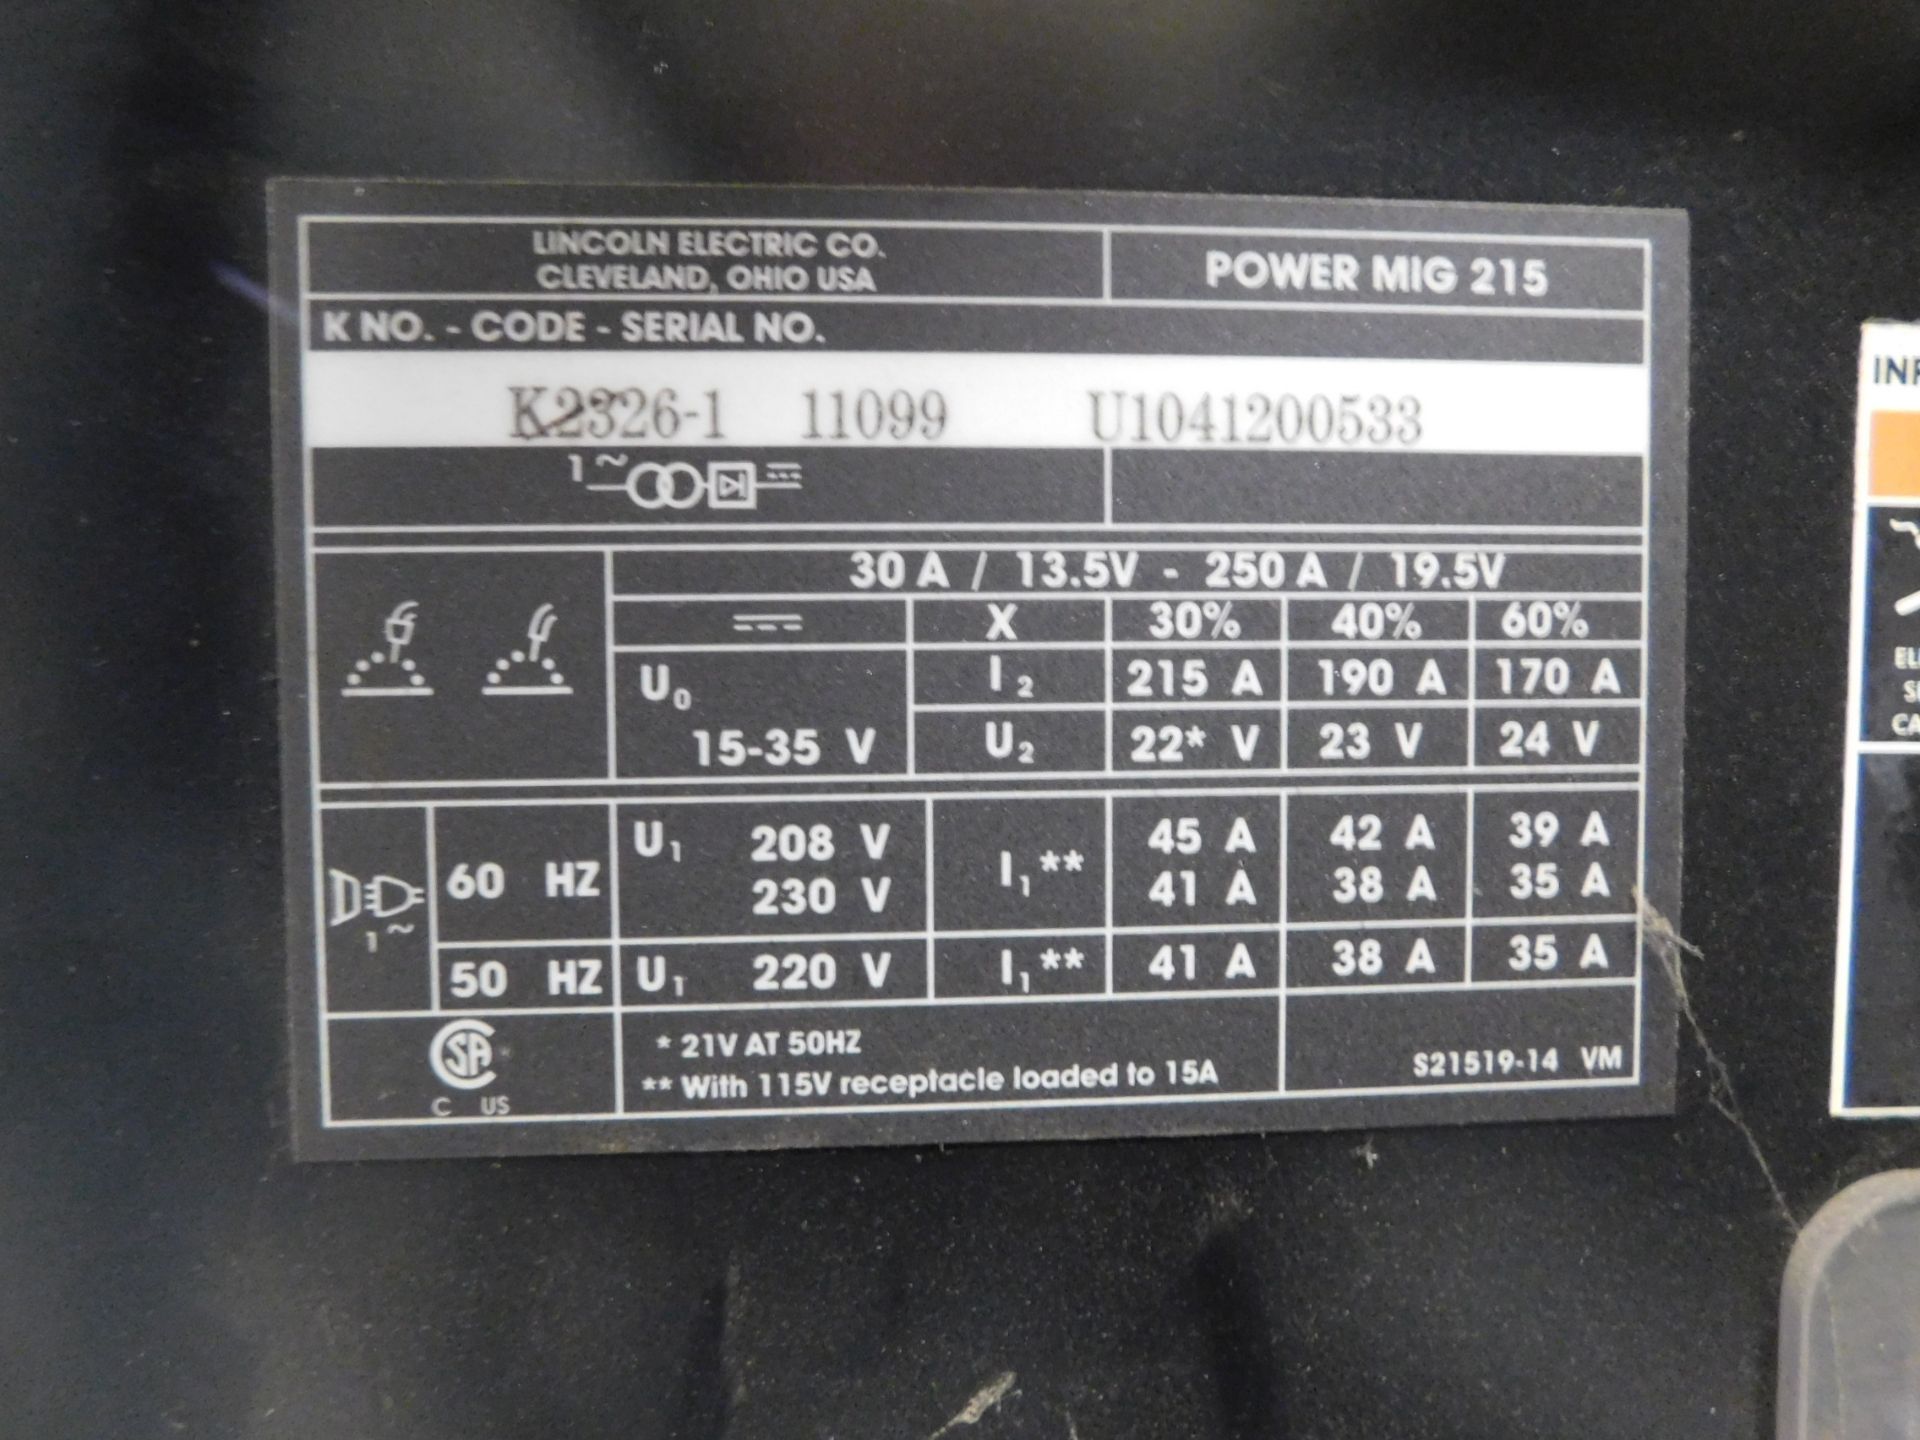 Lincoln Power Mig 215 Mig Welder, s/n U1041200533, 220/1/60 - Image 5 of 5